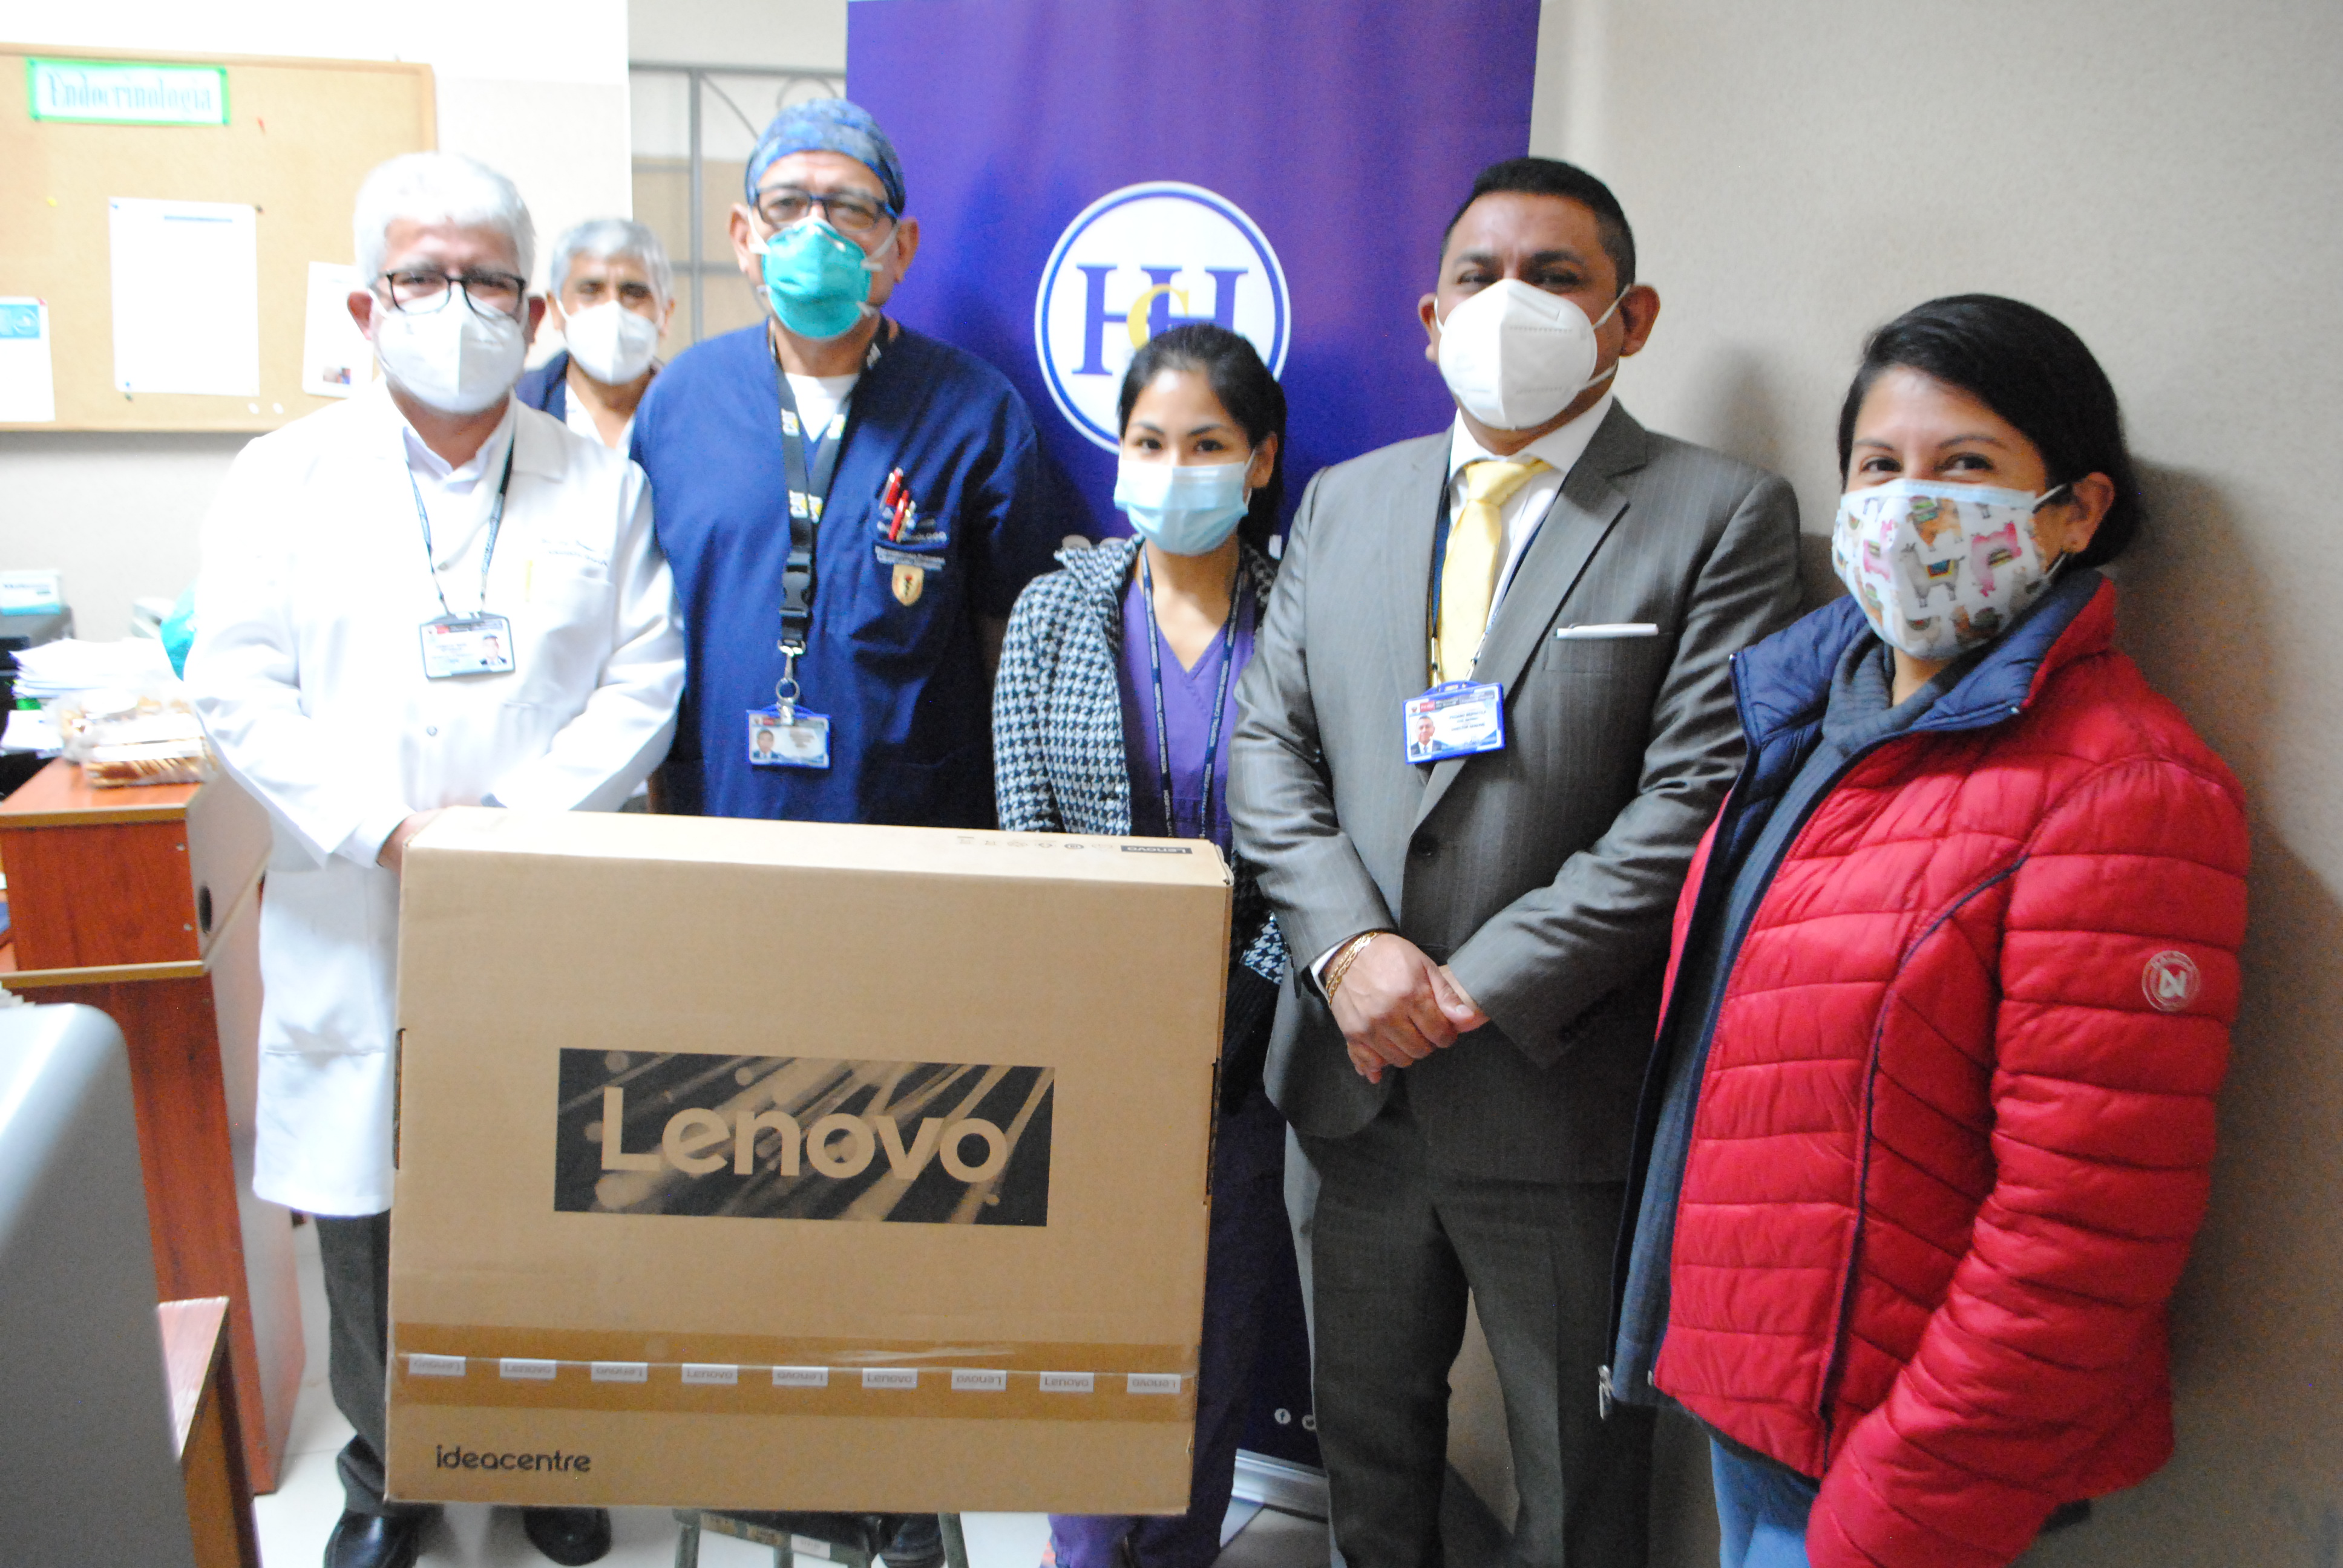 Imagen de la doctora Carmen Rosa Zuloaga Salas, médico residente del Servicio de Endocrinología, junto al director del hospital y el personal del servicio.